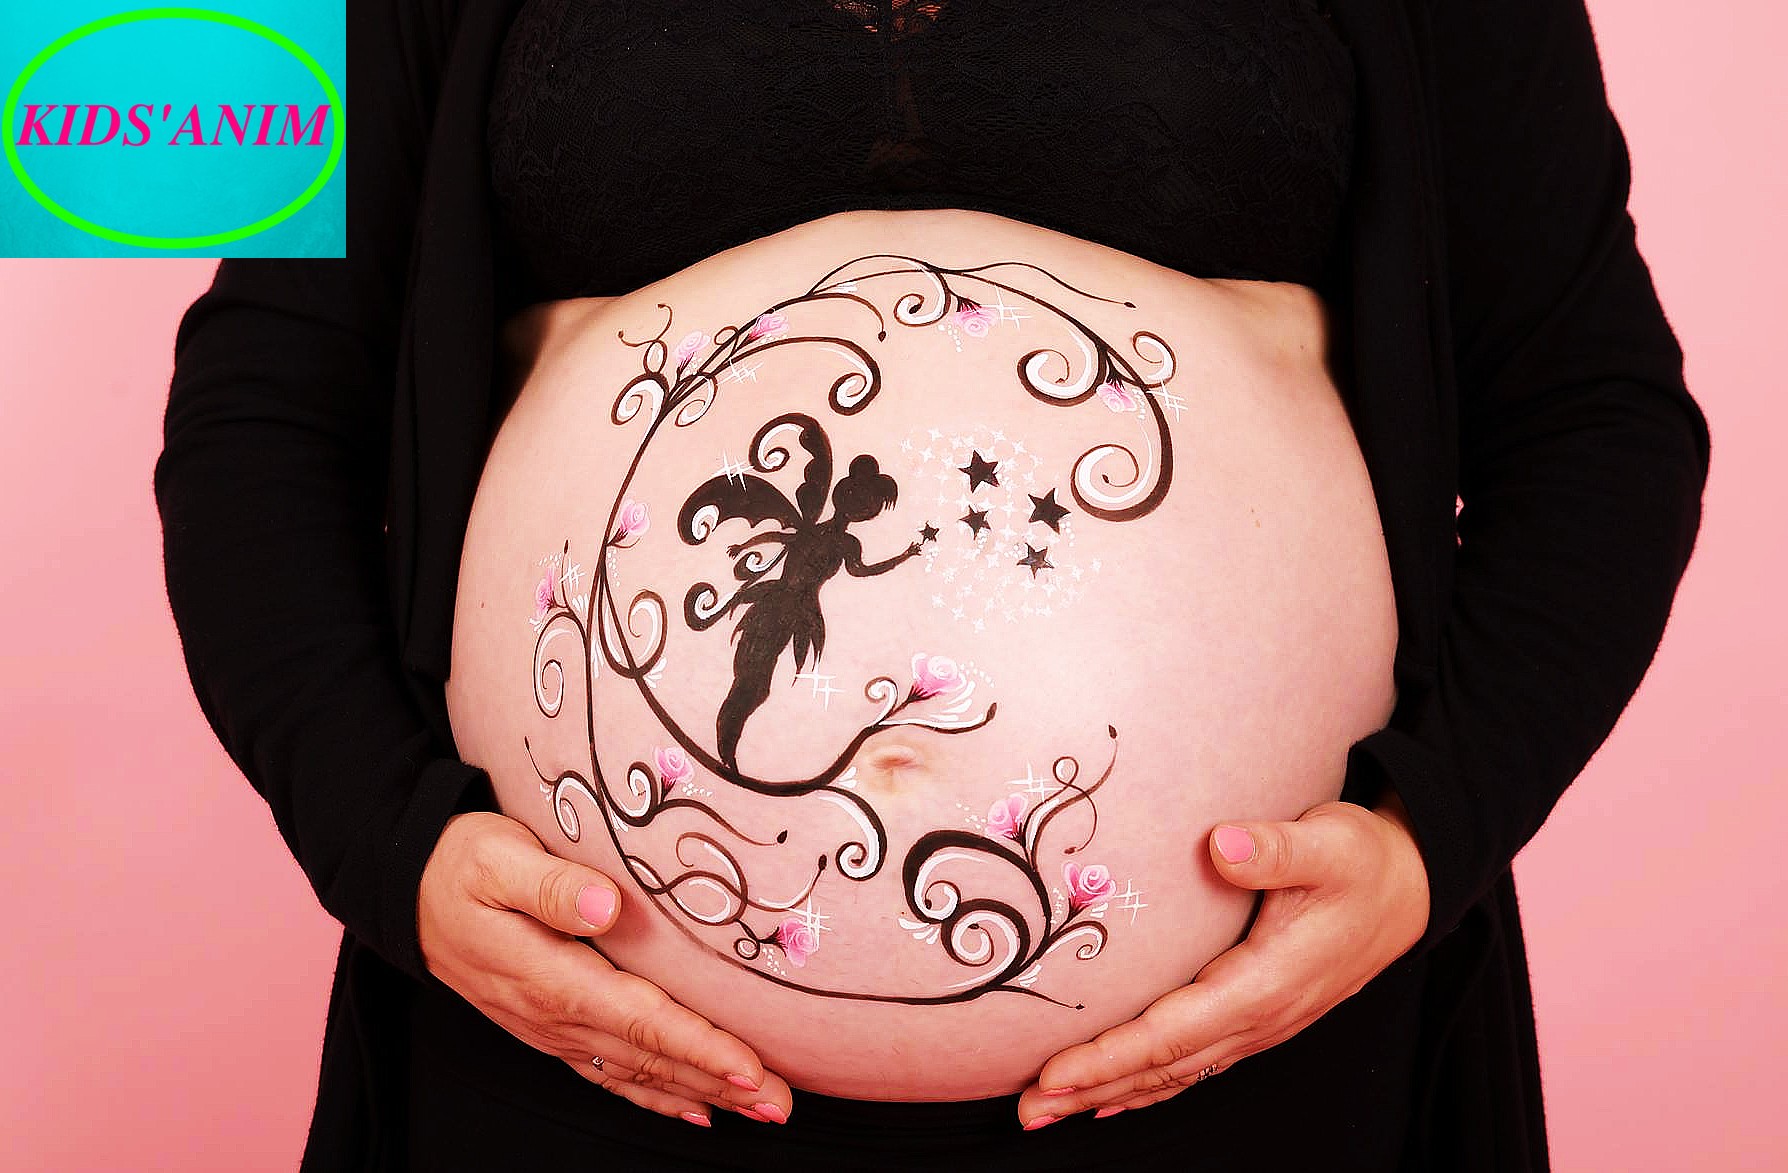 Belly Casting ou moulage du ventre pour femme enceinte